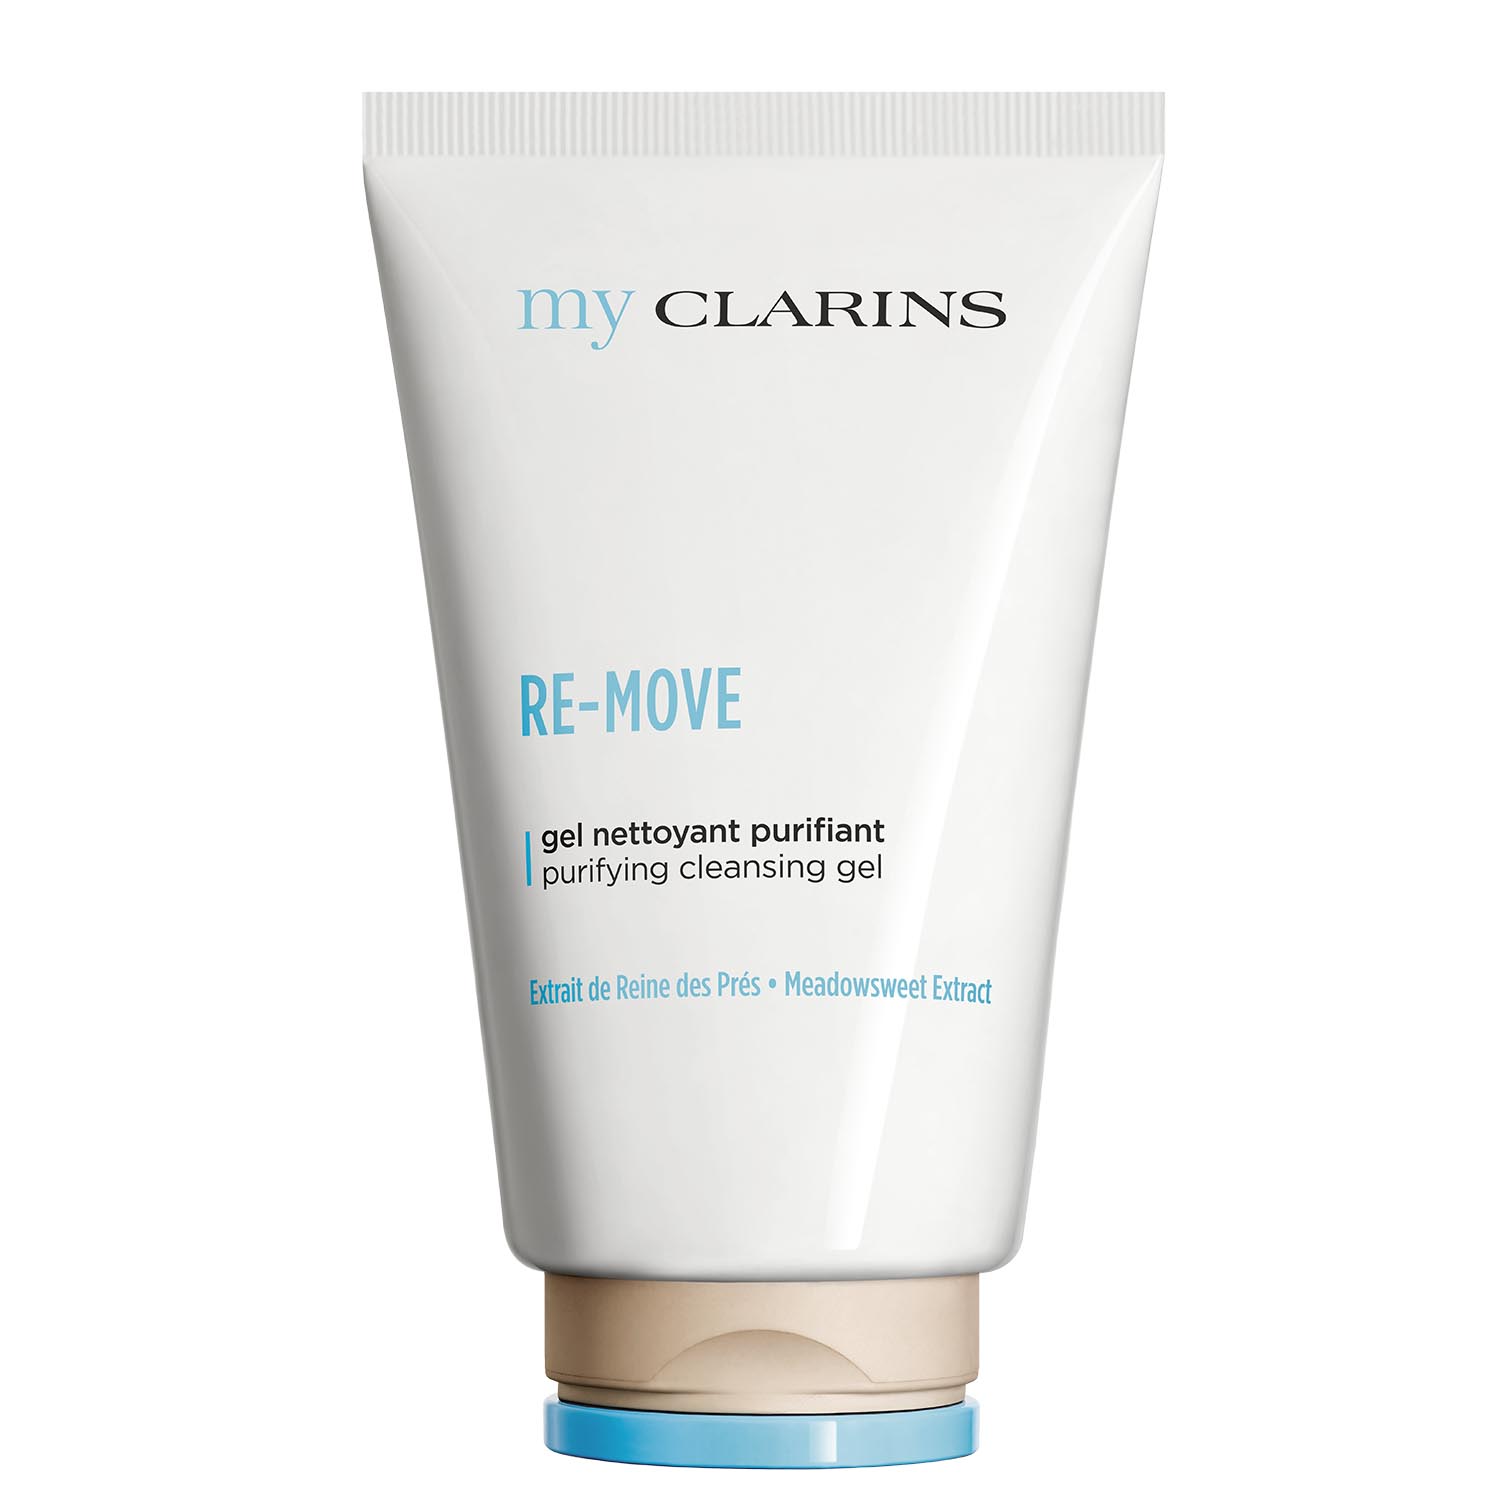 my clarins re-move detoxifying dermo-cleansing (gel limpiador desintoxicante de rostro)